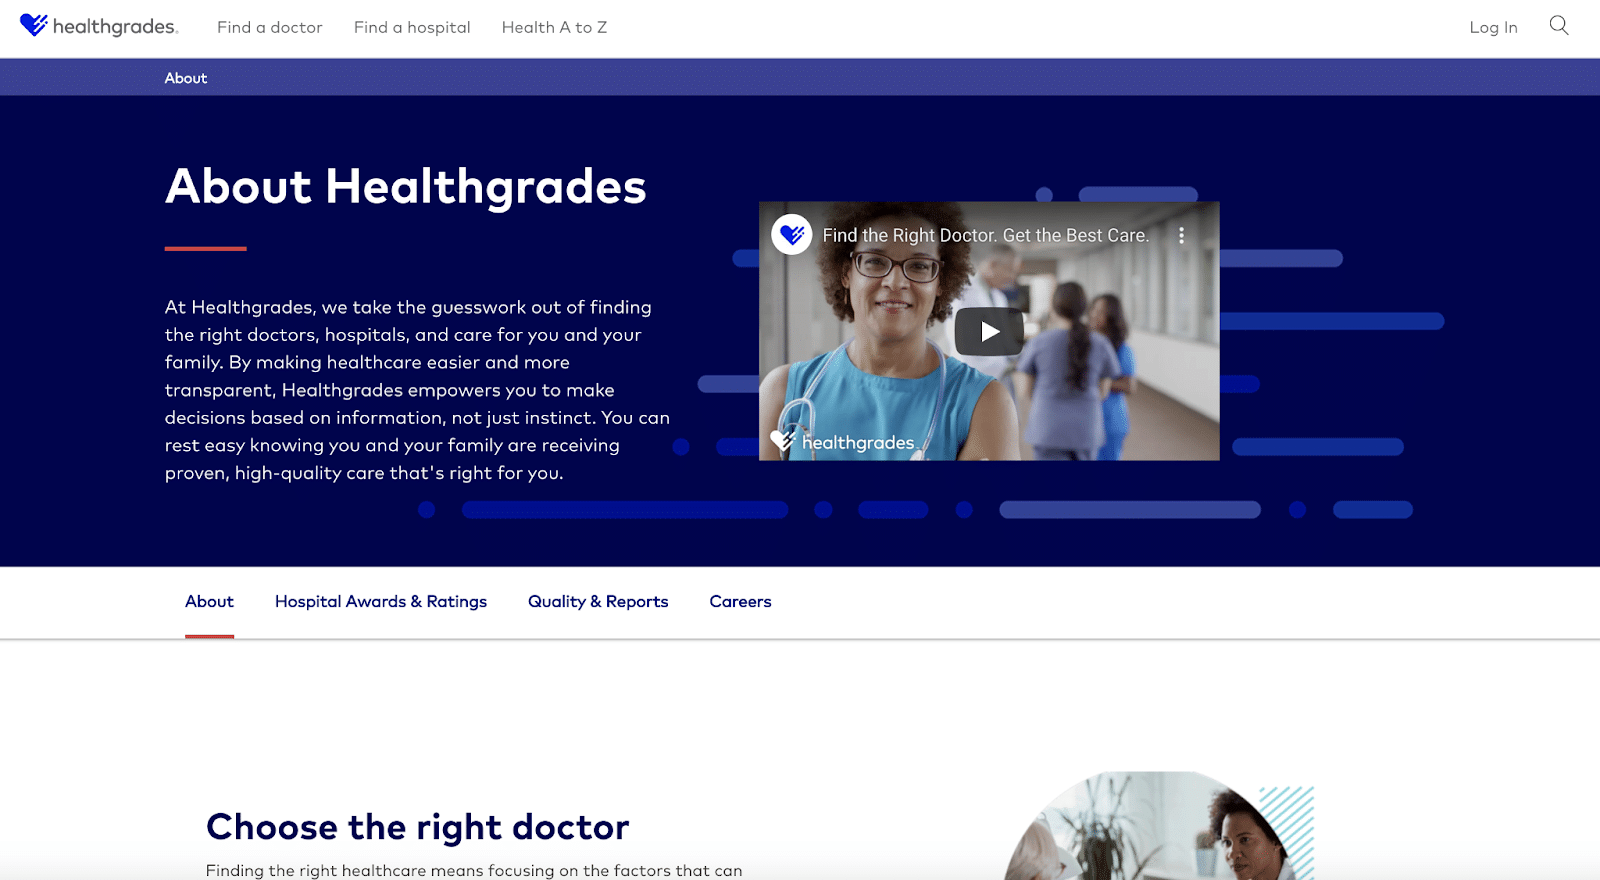 Healthgrades packt seine "Über uns"-Seite mit einer Fülle von Inhalten.